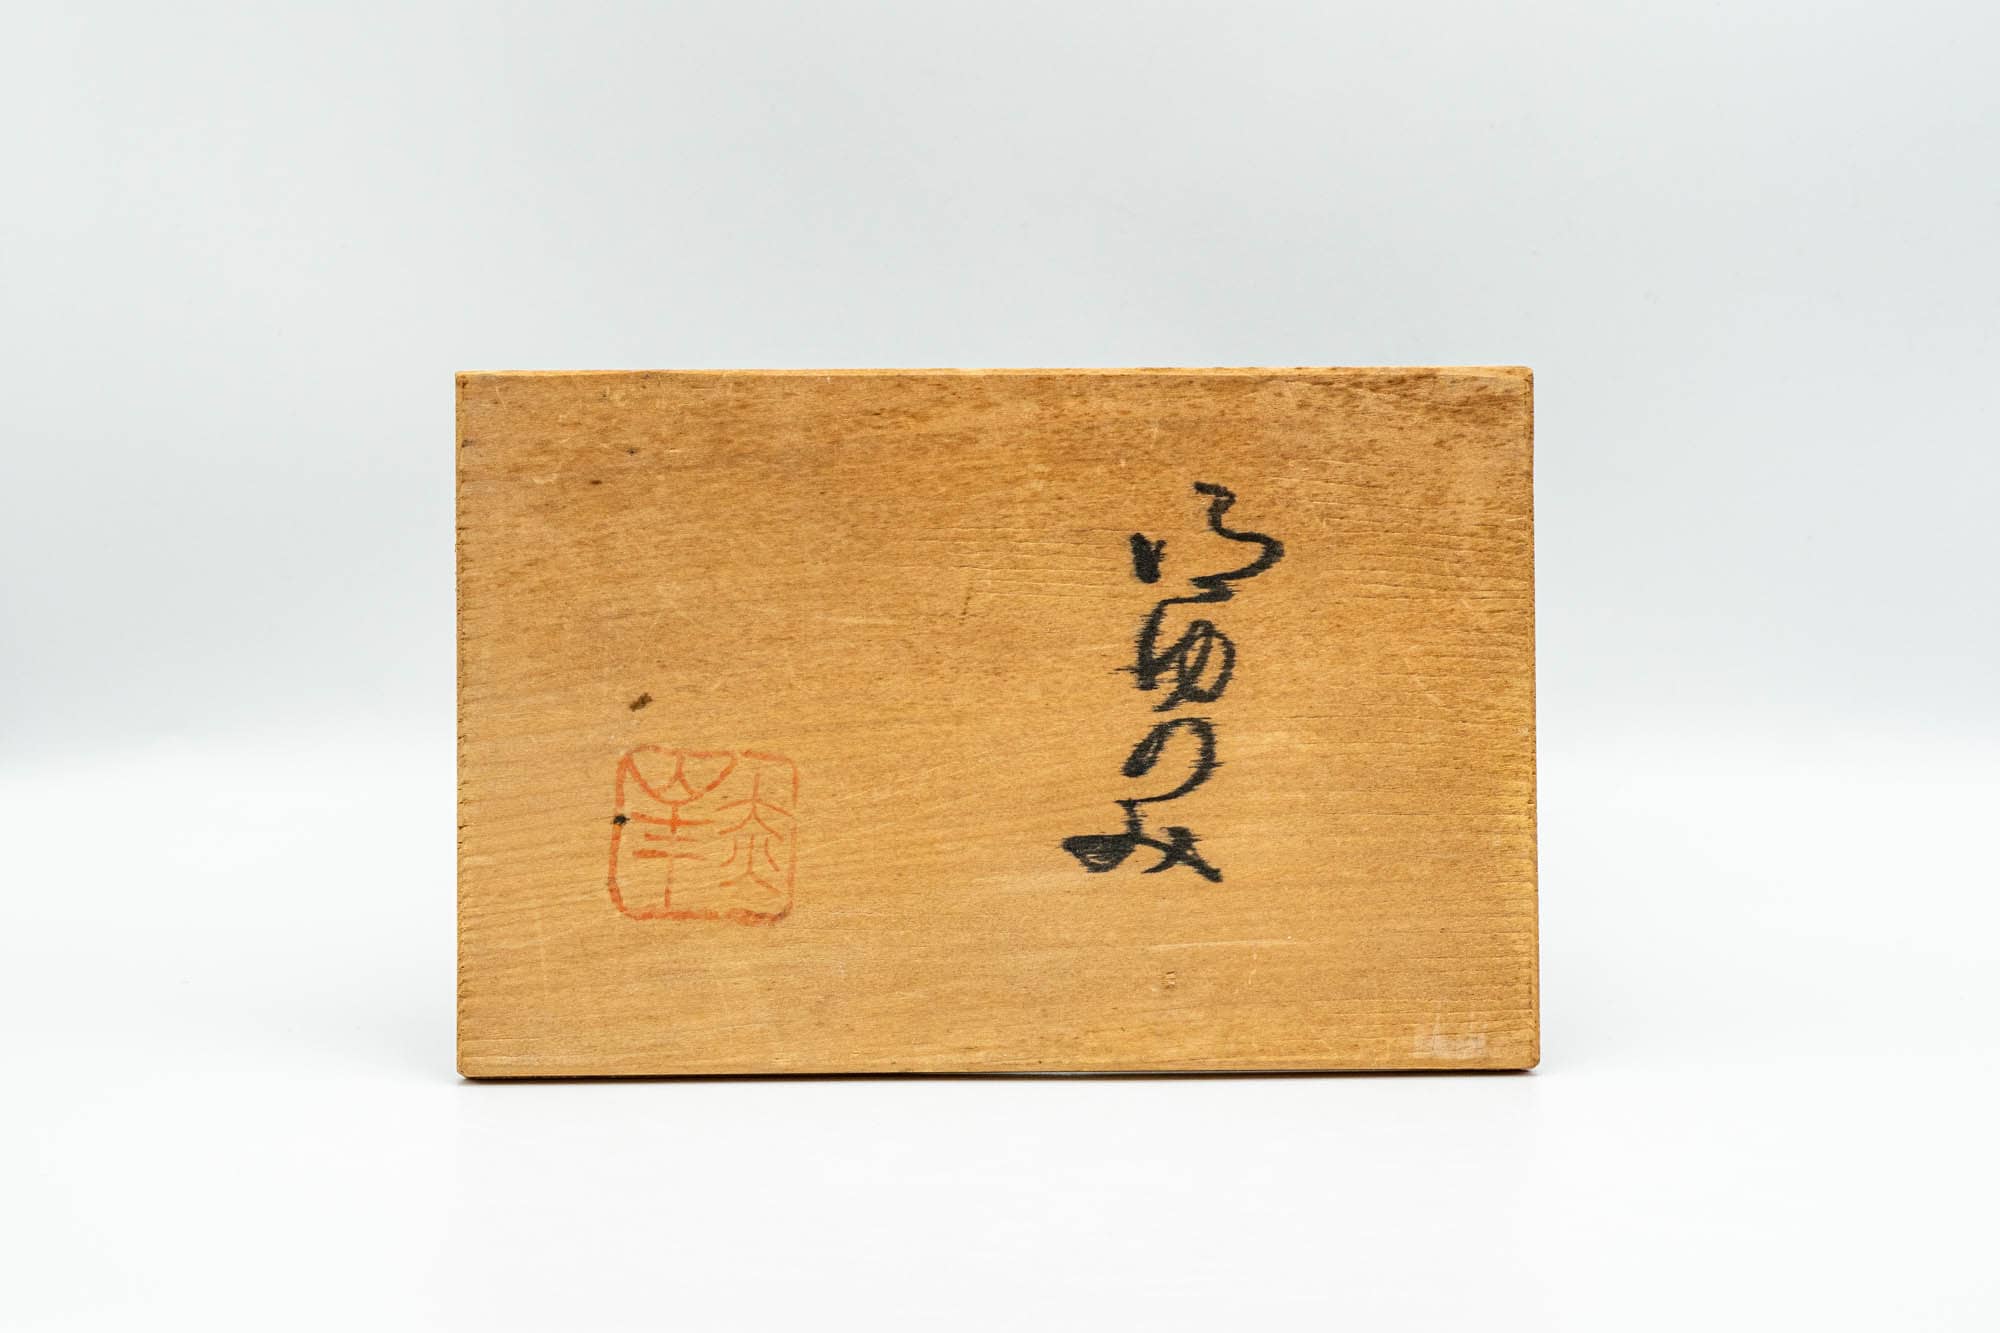 Japanese Teacups - Pair of Green Spiraling Meoto Yunomi in Wooden Box - 140ml